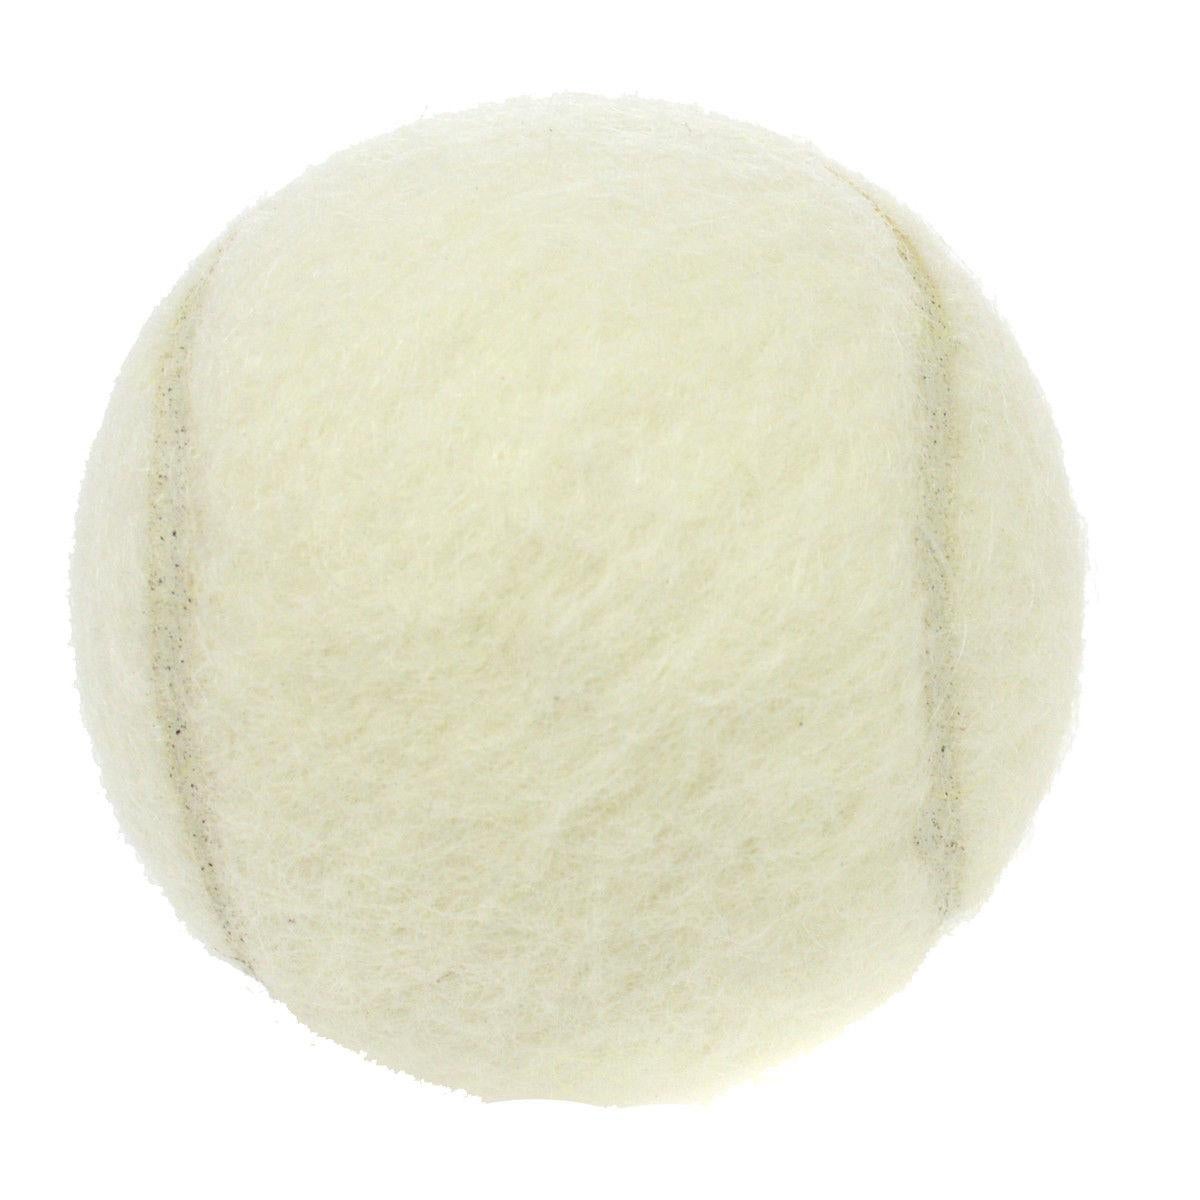 Chanel White Black Novelty Tennis Ball

Wool/Nylon blend
Diameter 2.5